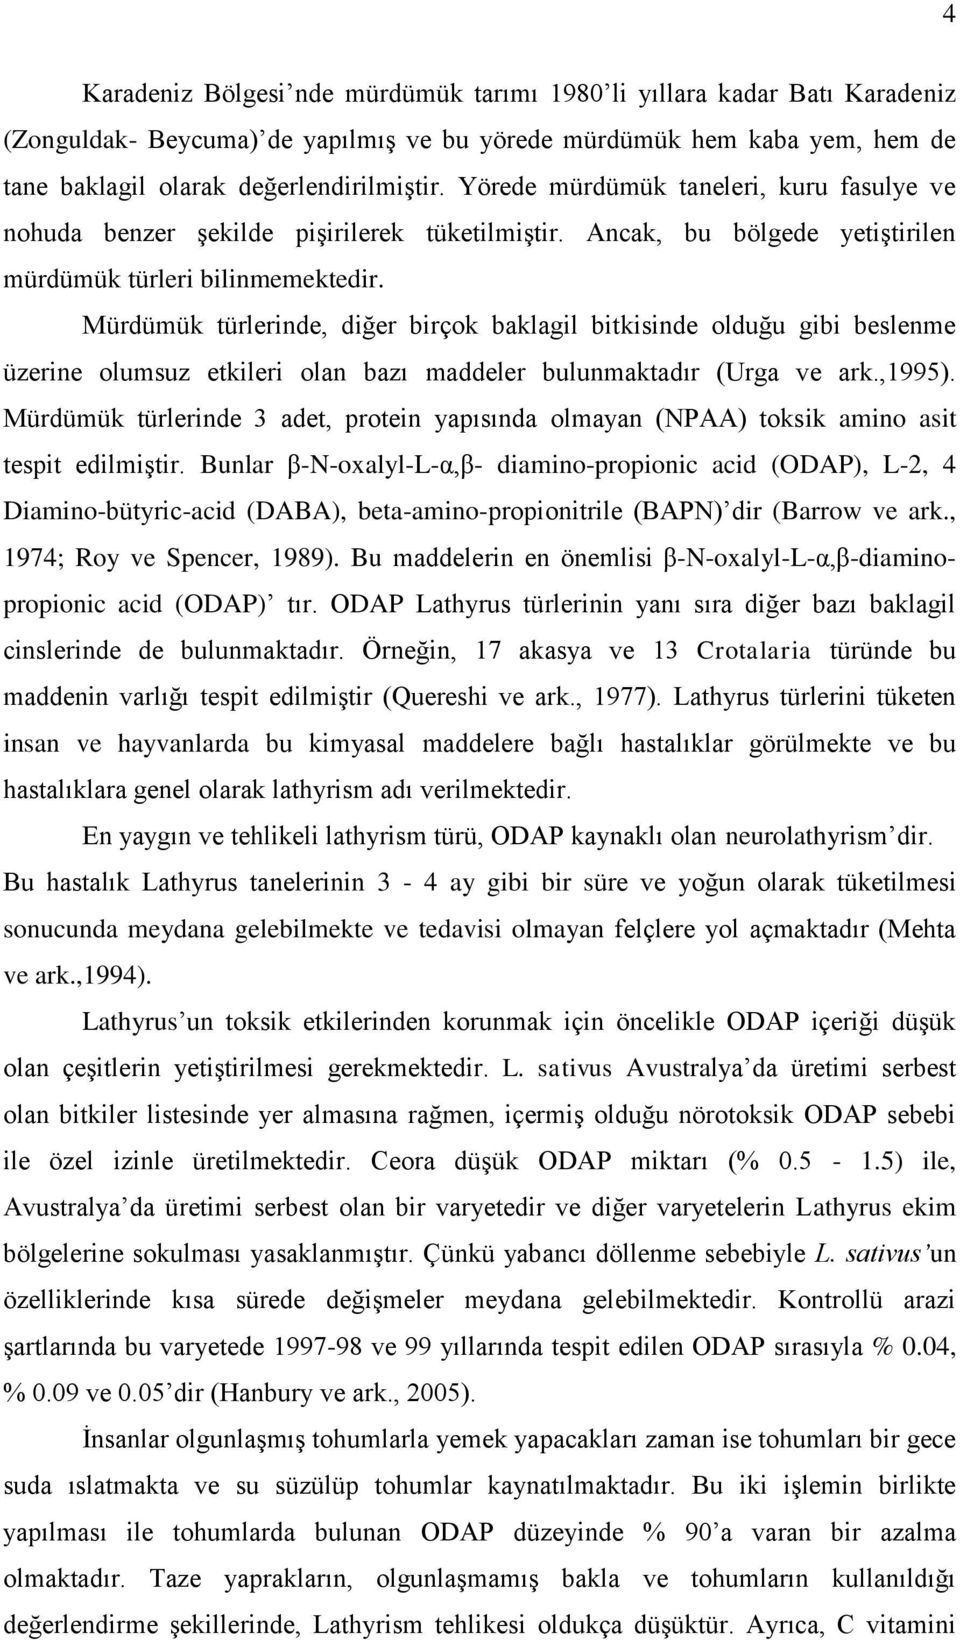 Mürdümük türlerinde, diğer birçok baklagil bitkisinde olduğu gibi beslenme üzerine olumsuz etkileri olan bazı maddeler bulunmaktadır (Urga ve ark.,1995).